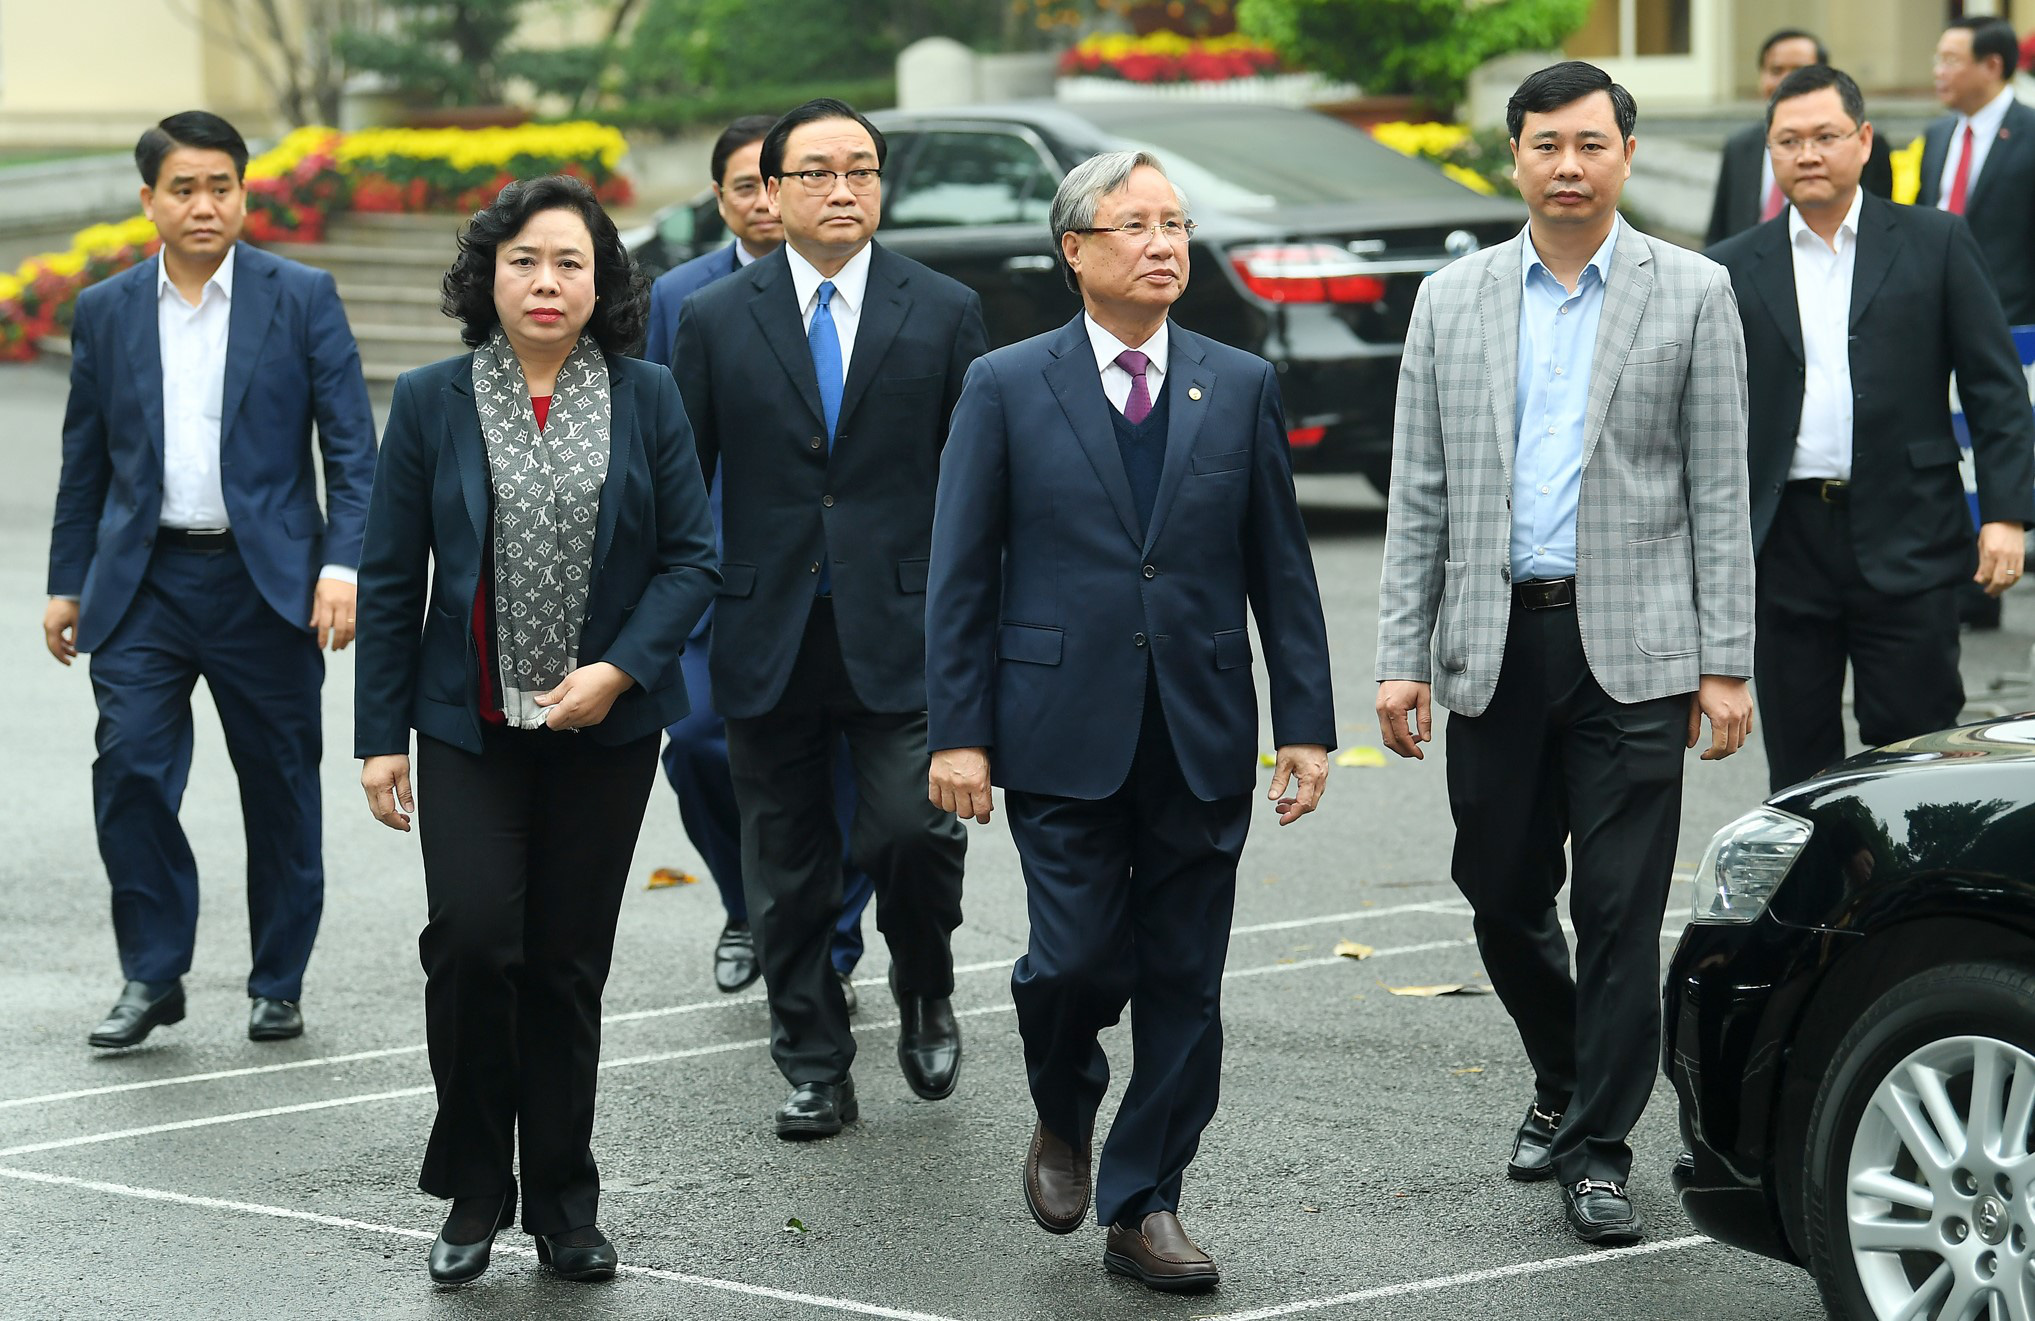 (ẢNH) Toàn cảnh lễ nhận quyết định Bí thư Thành ủy Hà Nội của Phó Thủ tướng Vương Đình Huệ - Ảnh 1.